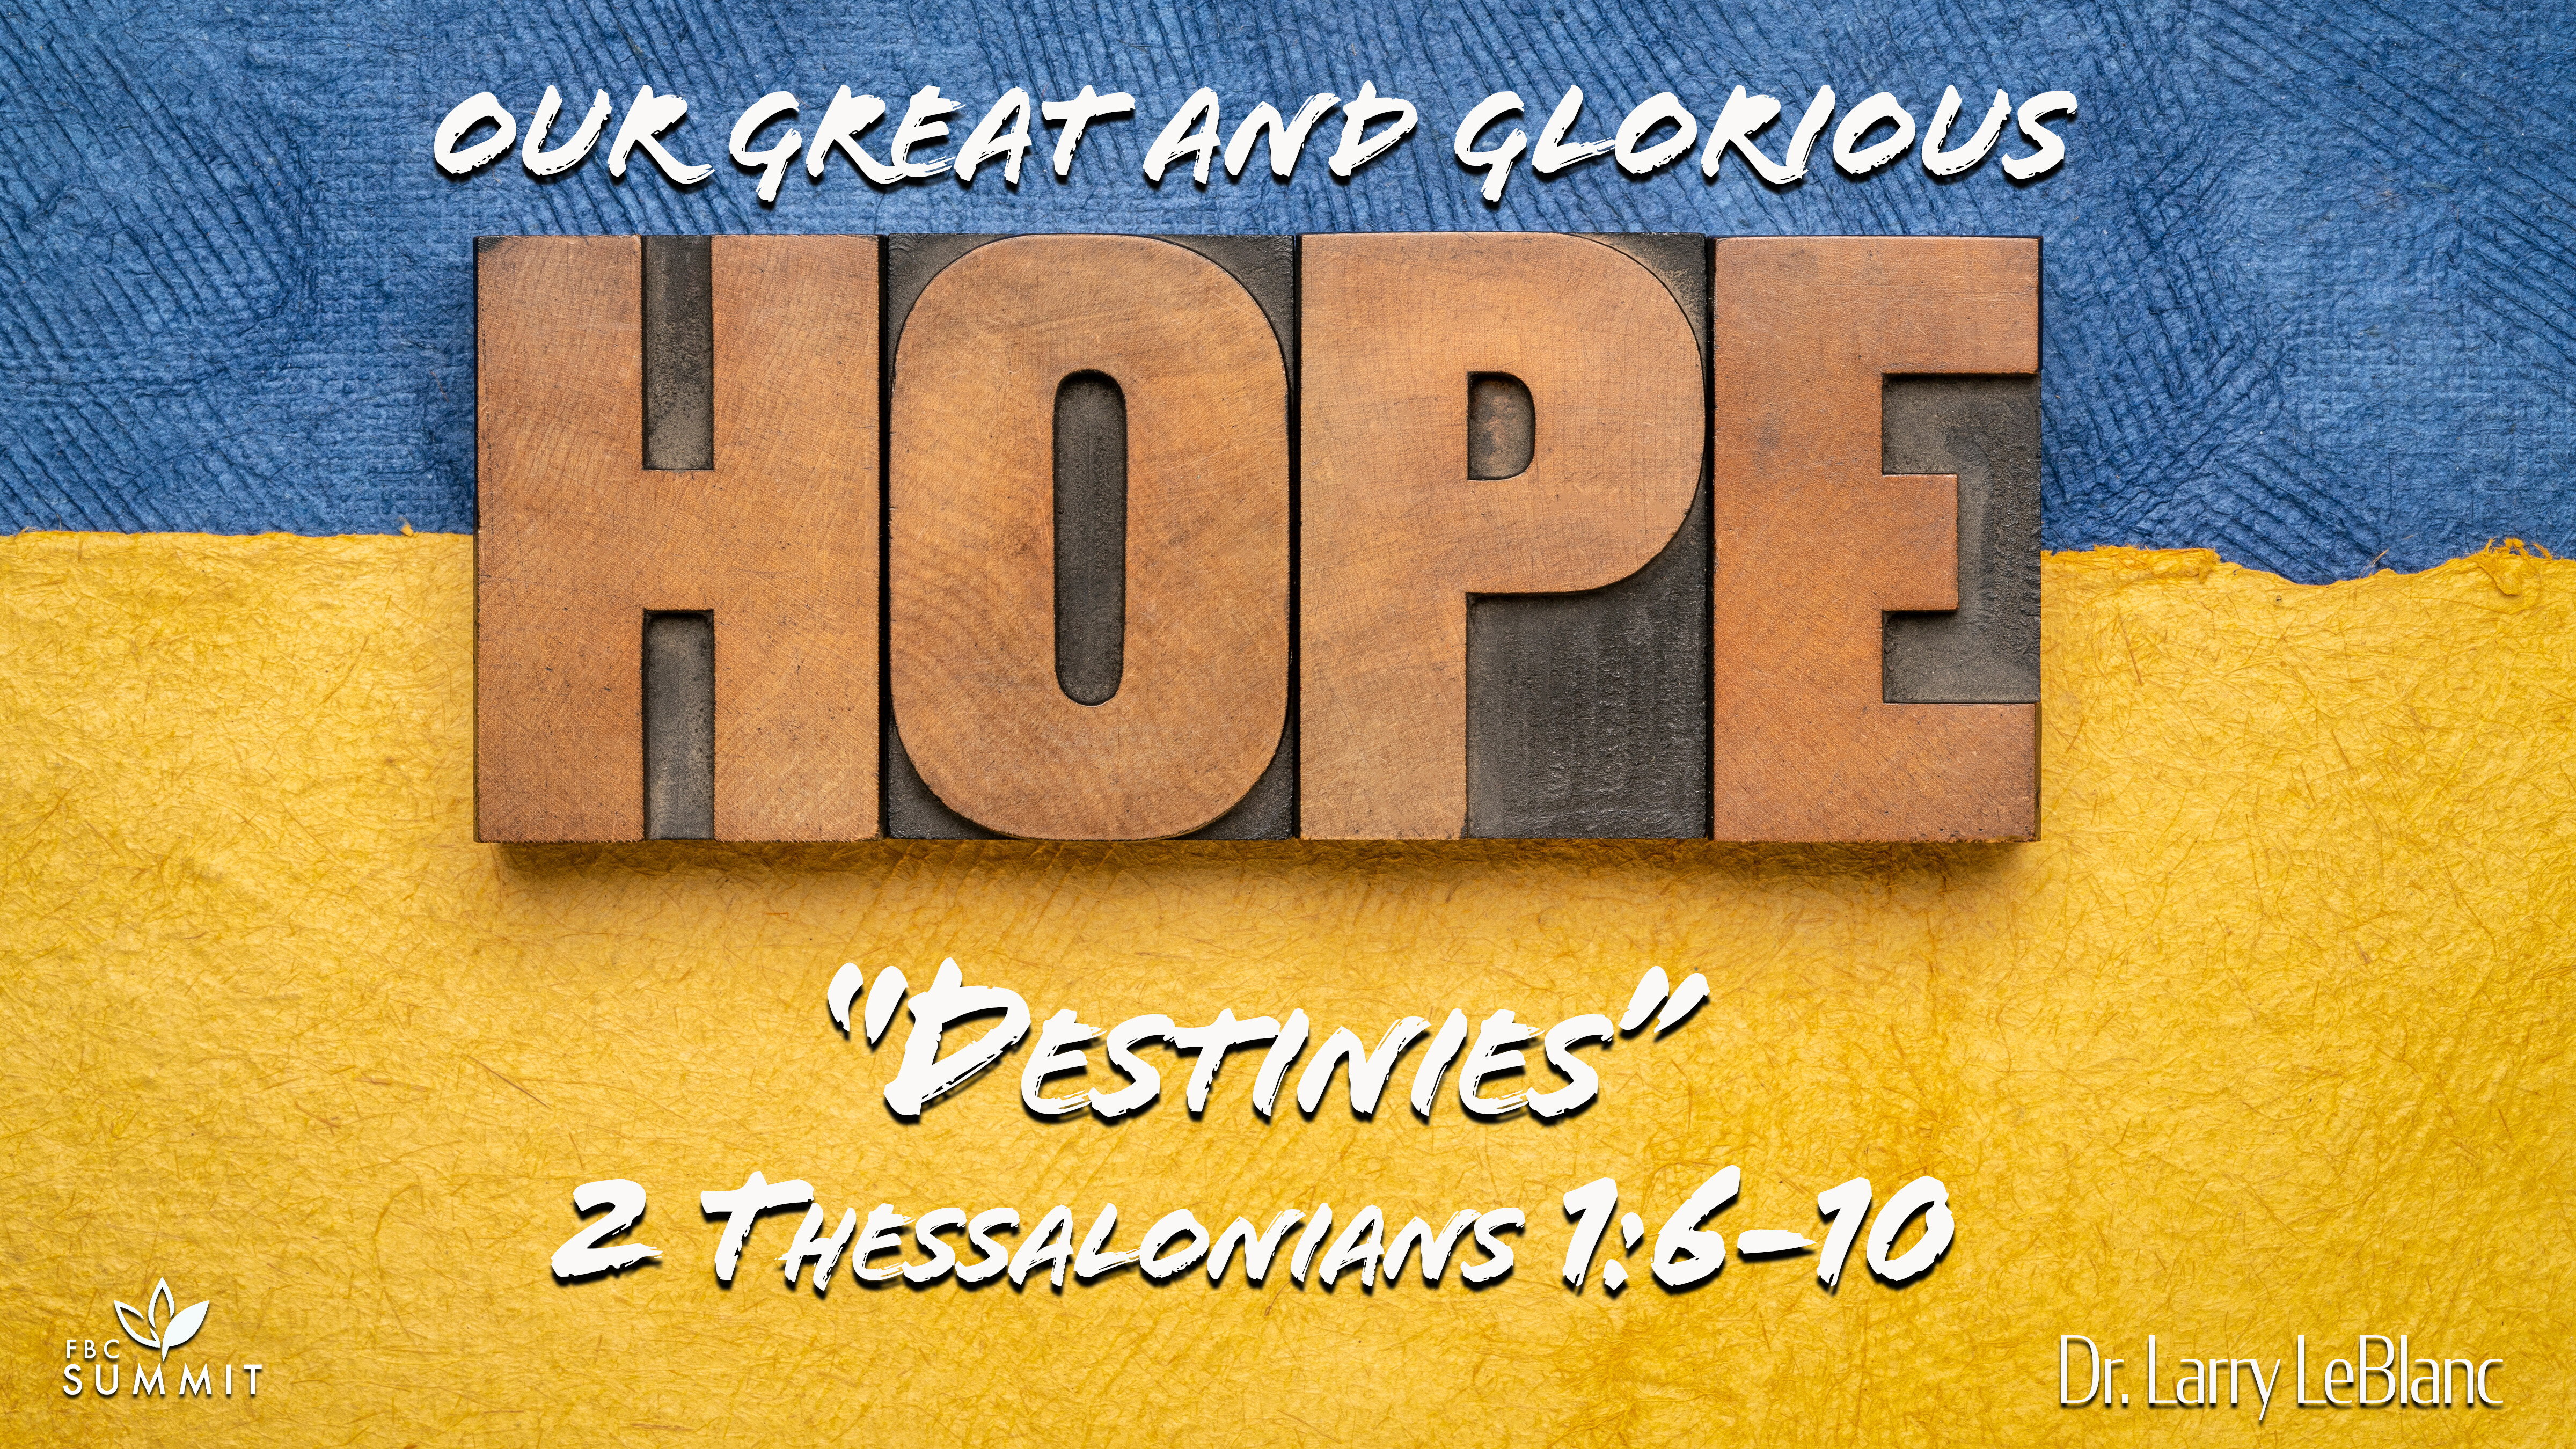 "Destinies" 2 Thessalonians 1:6-10 // Dr. Larry LeBlanc